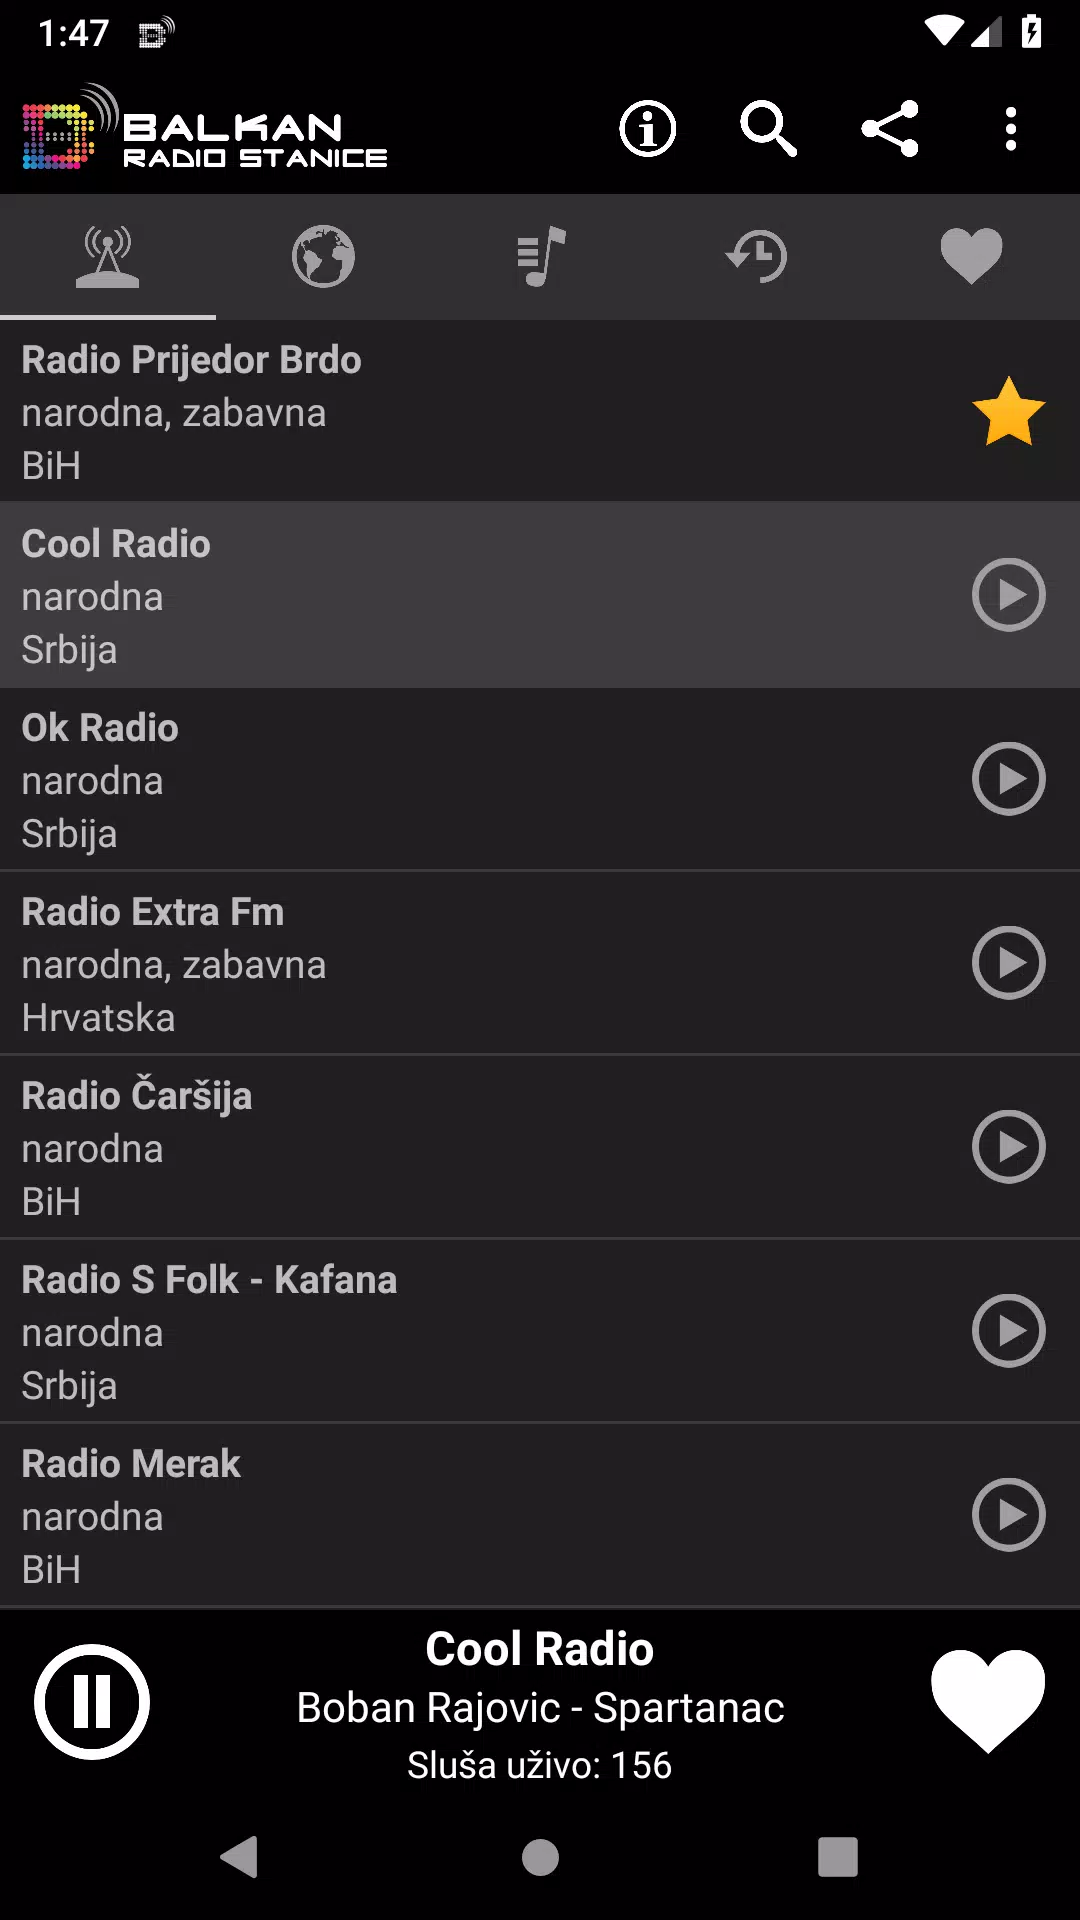 Balkan Radio Stanice APK für Android herunterladen